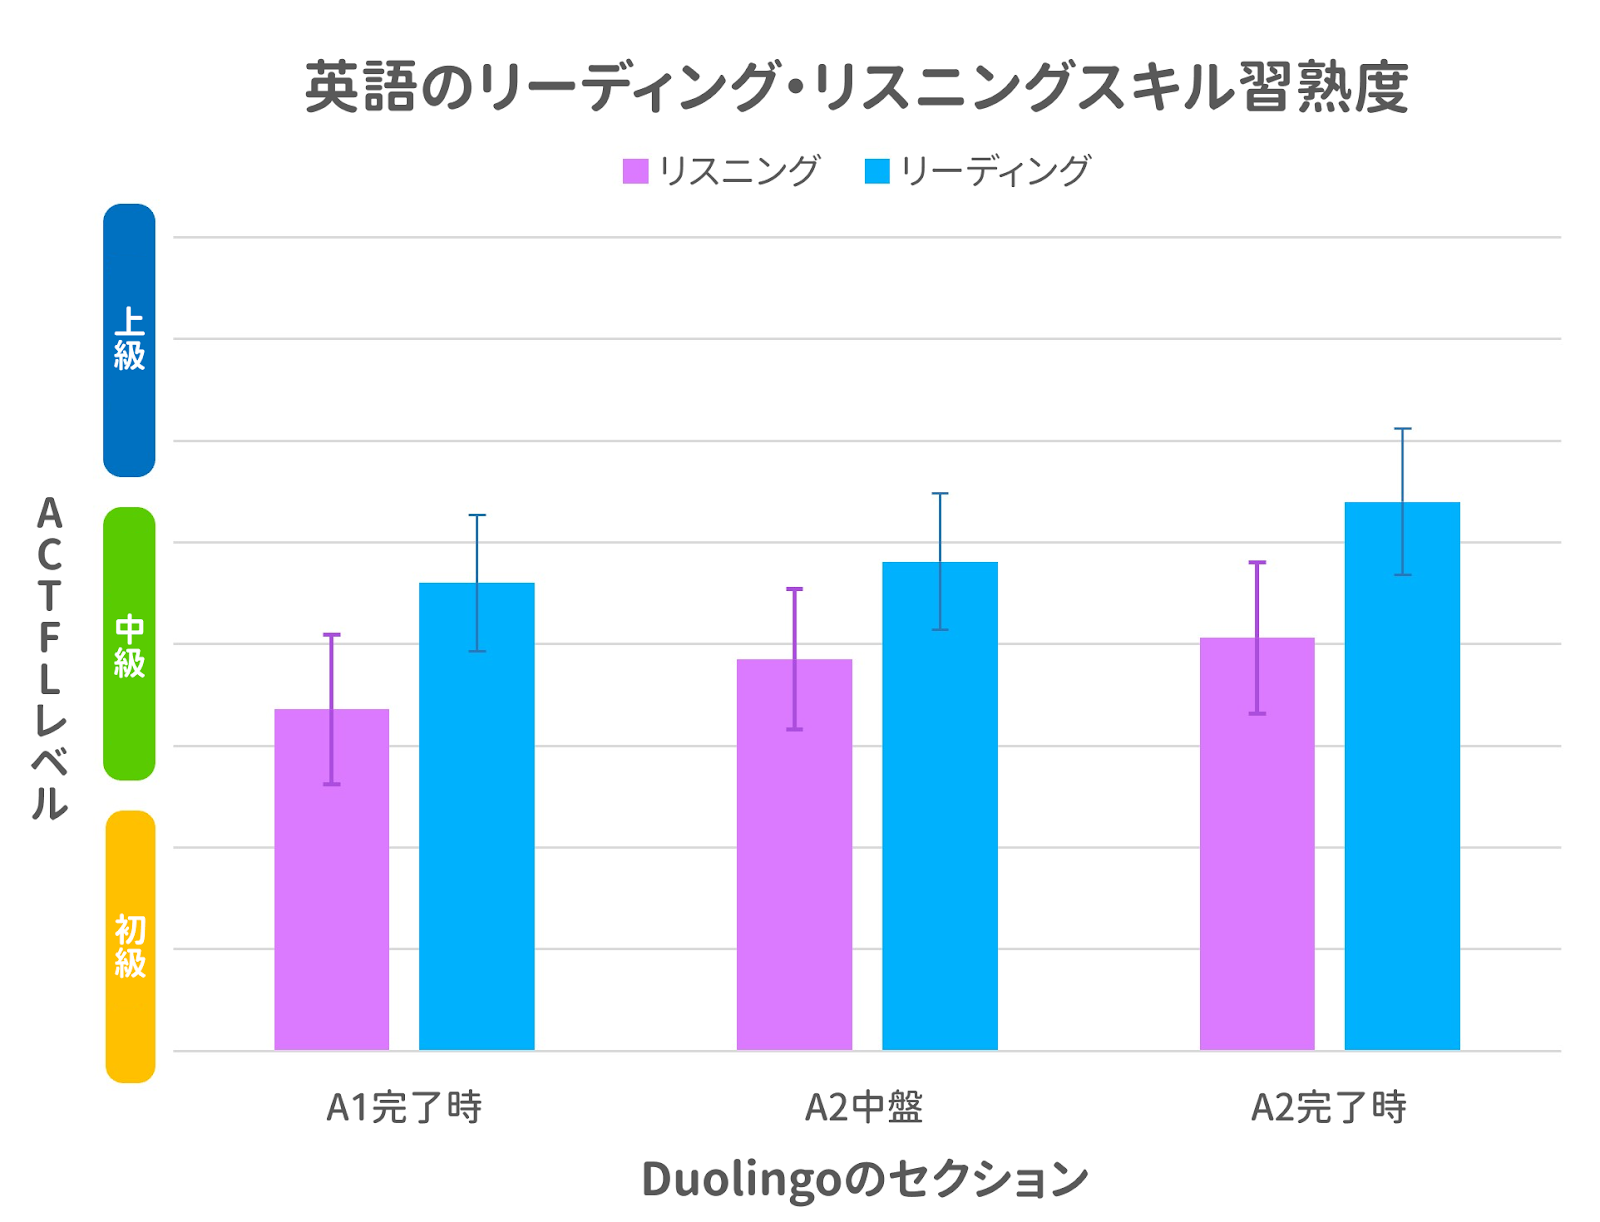 英語リーディングとリスニングの習熟度を示す棒グラフ。横のX軸には、Duolingoの3つのセクション「 A1完了時」「A2中盤」「A2完了時」が表示されている。縦のY軸はACTFLのレベルとなっており、下3分の1は「初級」、中3分の1は「中級」、上3分の1は「上級」と表示されている。Duolingoの各セクションには、リスニングスコアとリーディングスコアの2つの棒グラフが一組ずつ用意されている。どのセクションでも、リスニングとリーディングのスコアは共に中級の範囲に達しており、リーディングのスコアがリスニングのスコアより高くなっている。A1完了時からA2完了時まで、棒グラフは徐々に高くなり、最後のA2完了時のリーディングの棒グラフは、中級セクションの最も高い部分に到達している。